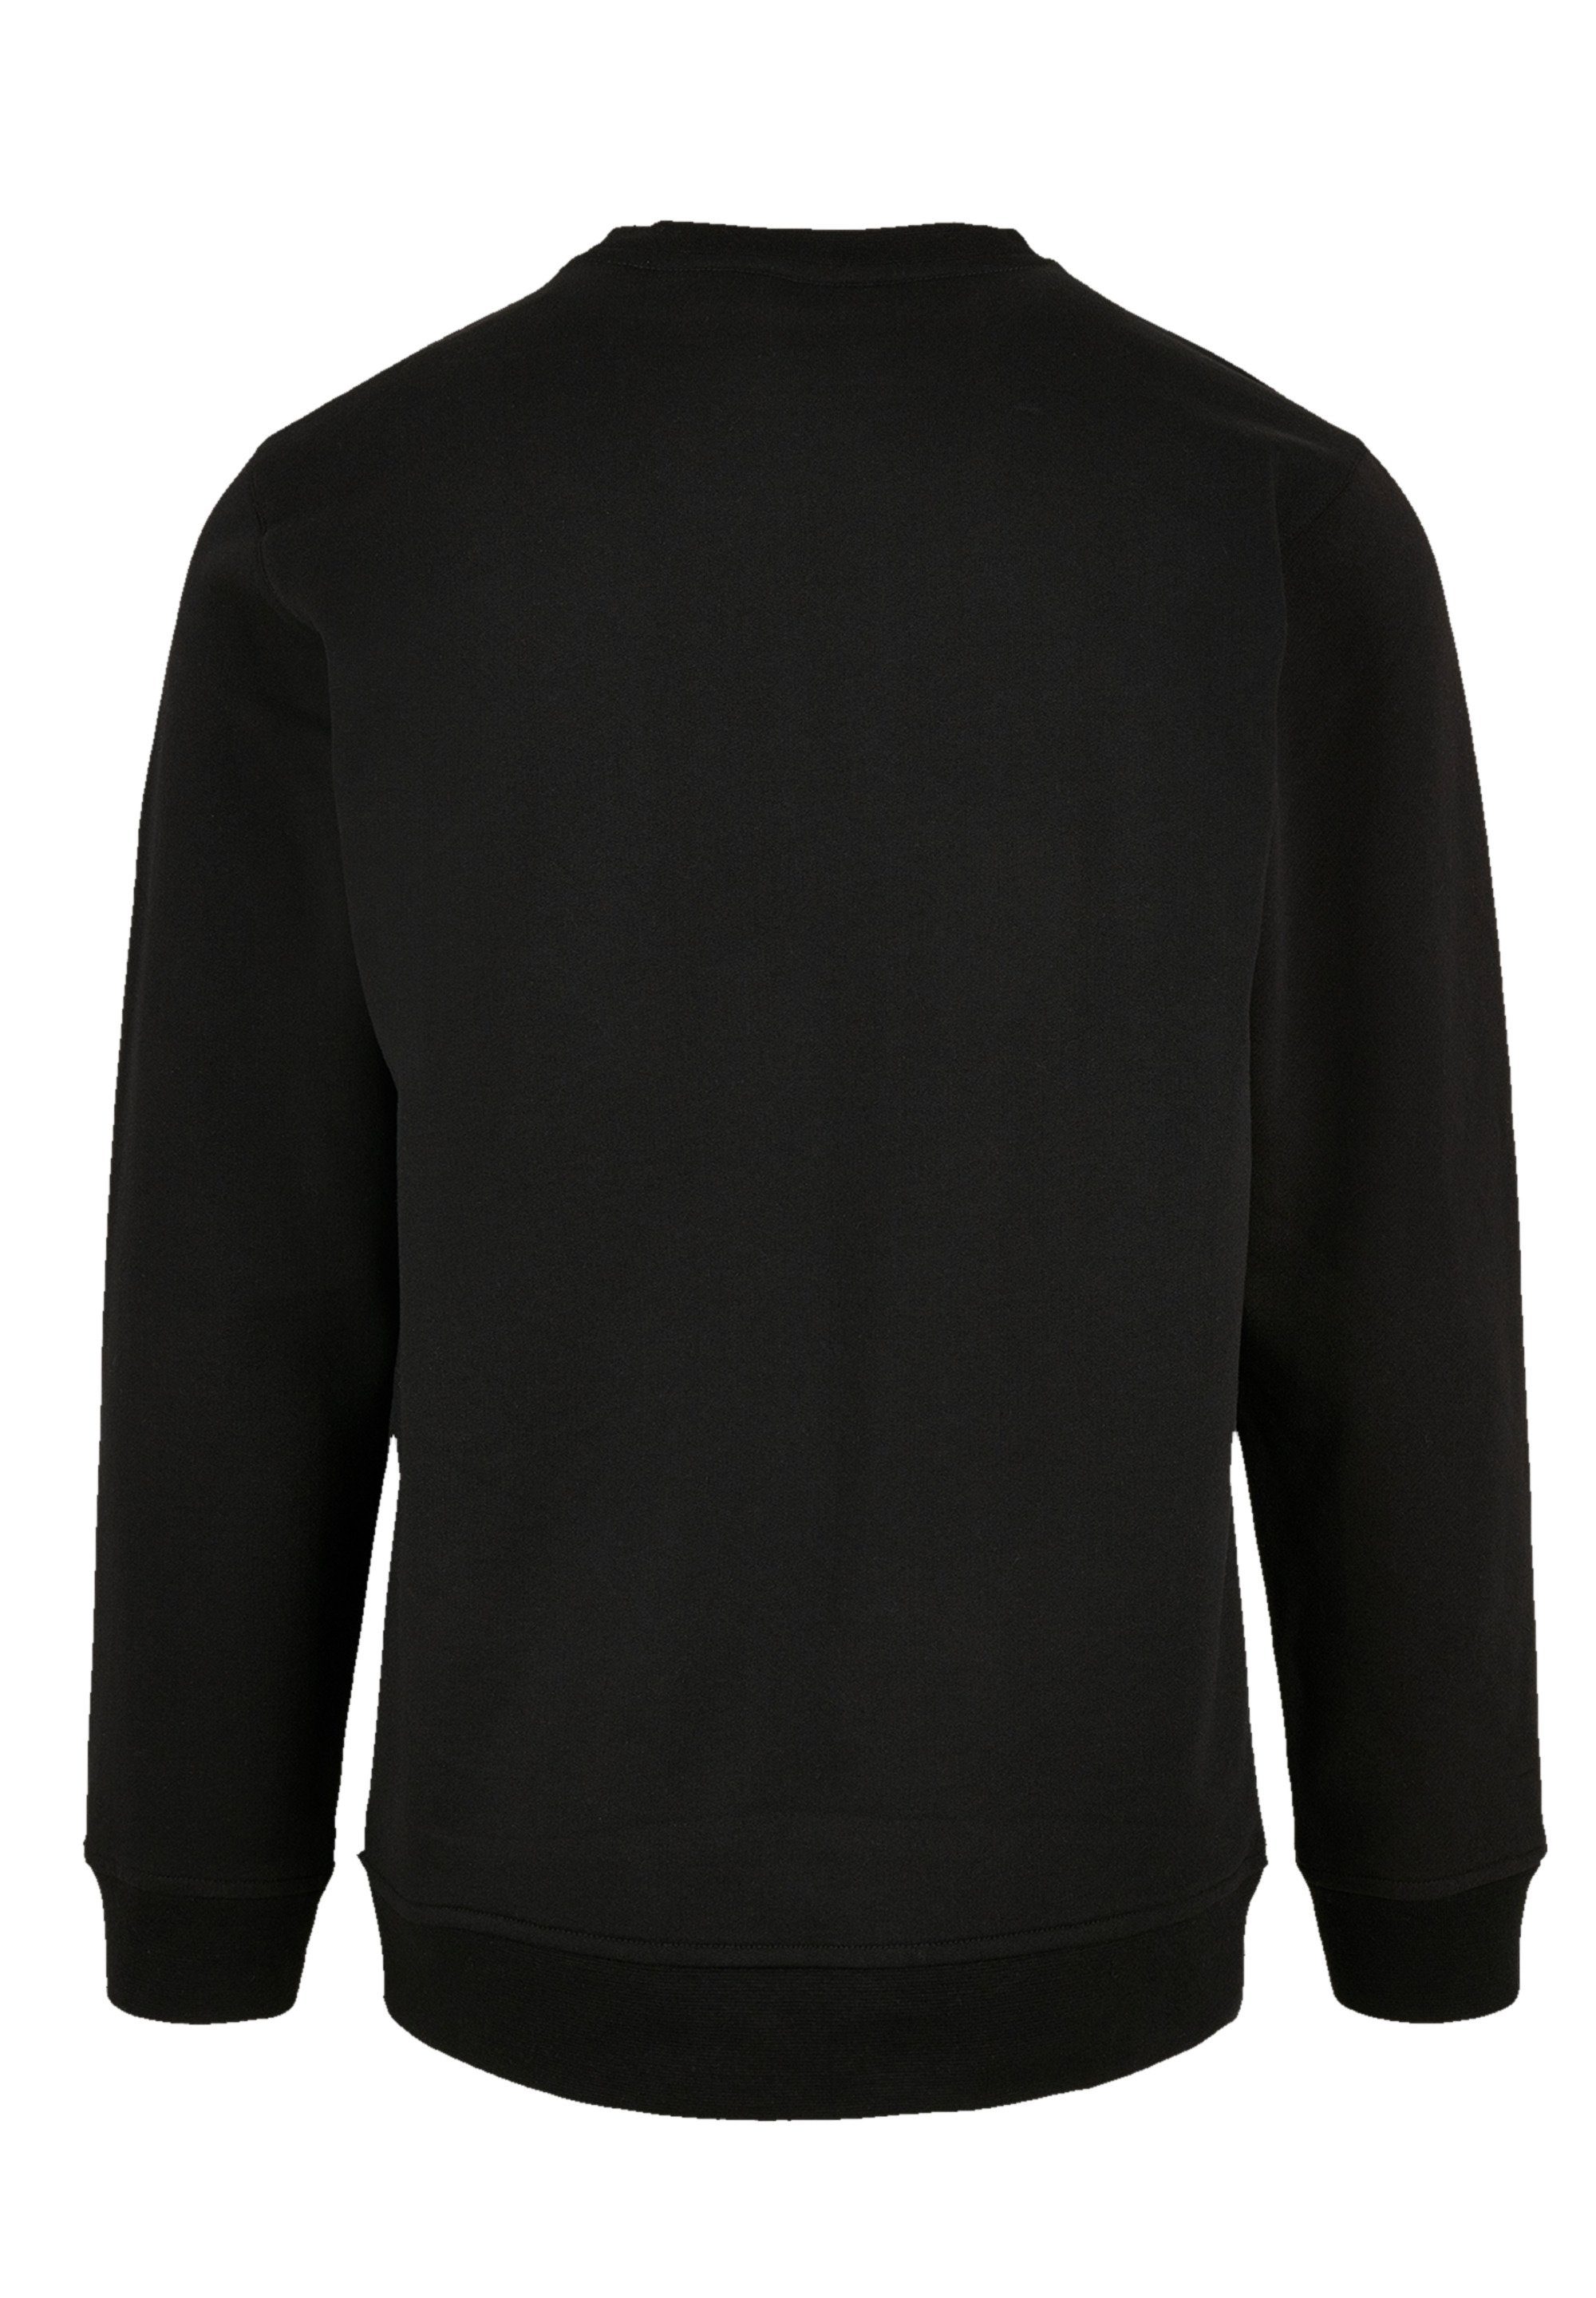 F4NT4STIC Sweatshirt The Jam Band Classic Logo Premium Qualität, Bequemer  Schnitt mit entspanntem Tragekomfort